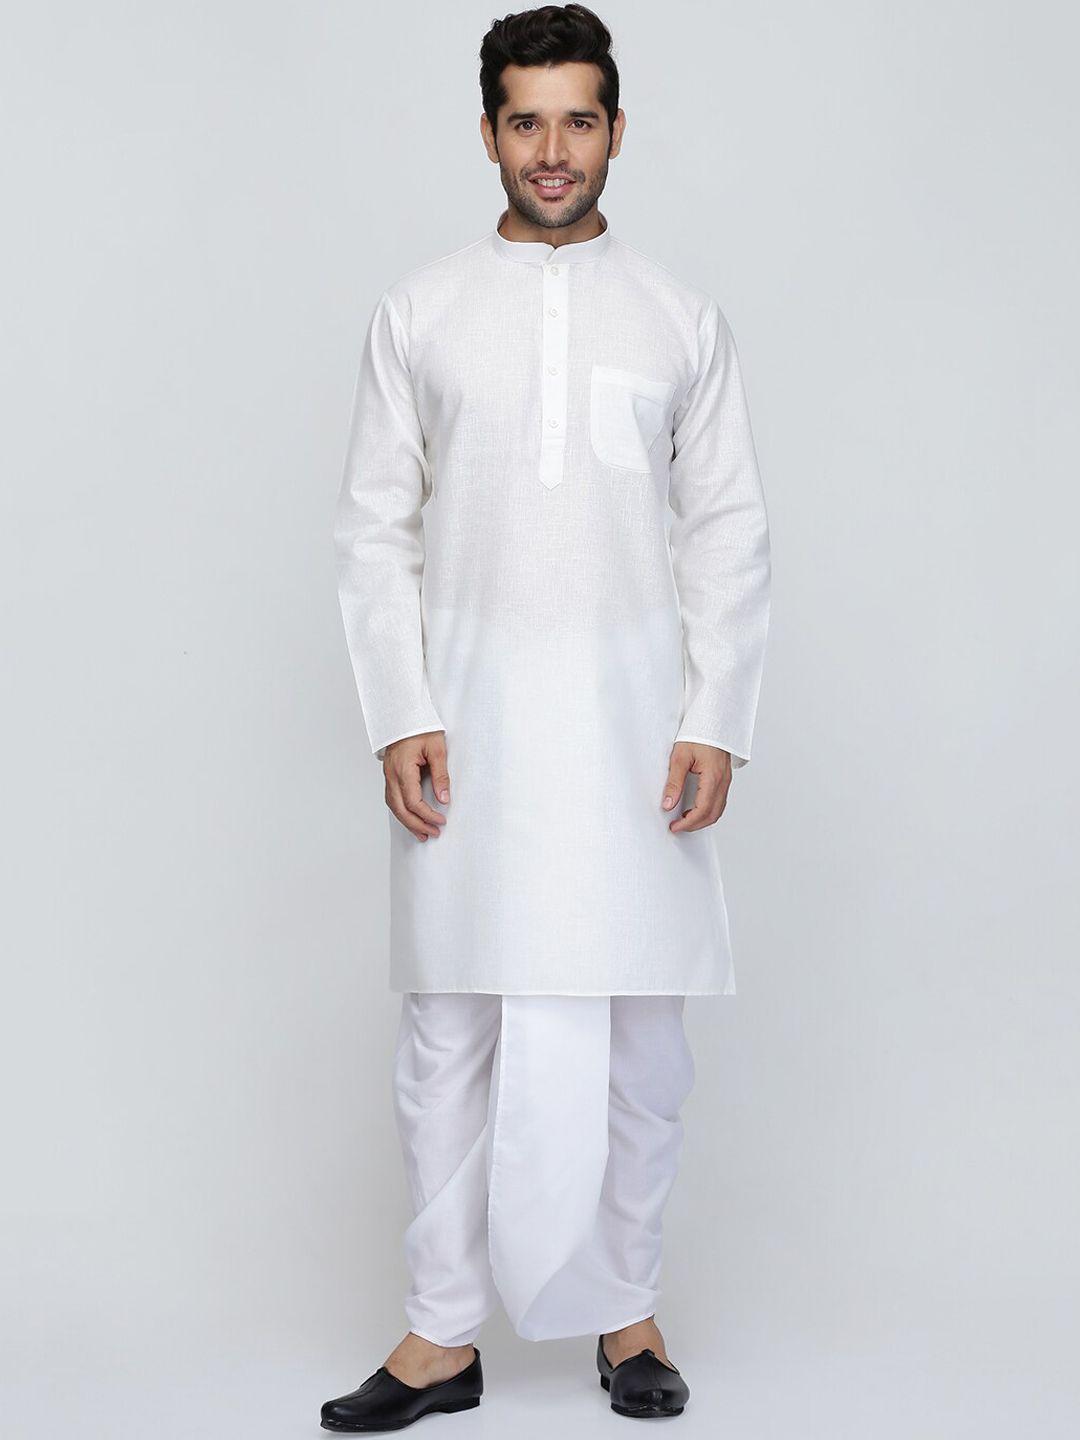 royal kurta mandarin collar pure cotton kurta with dhoti pants